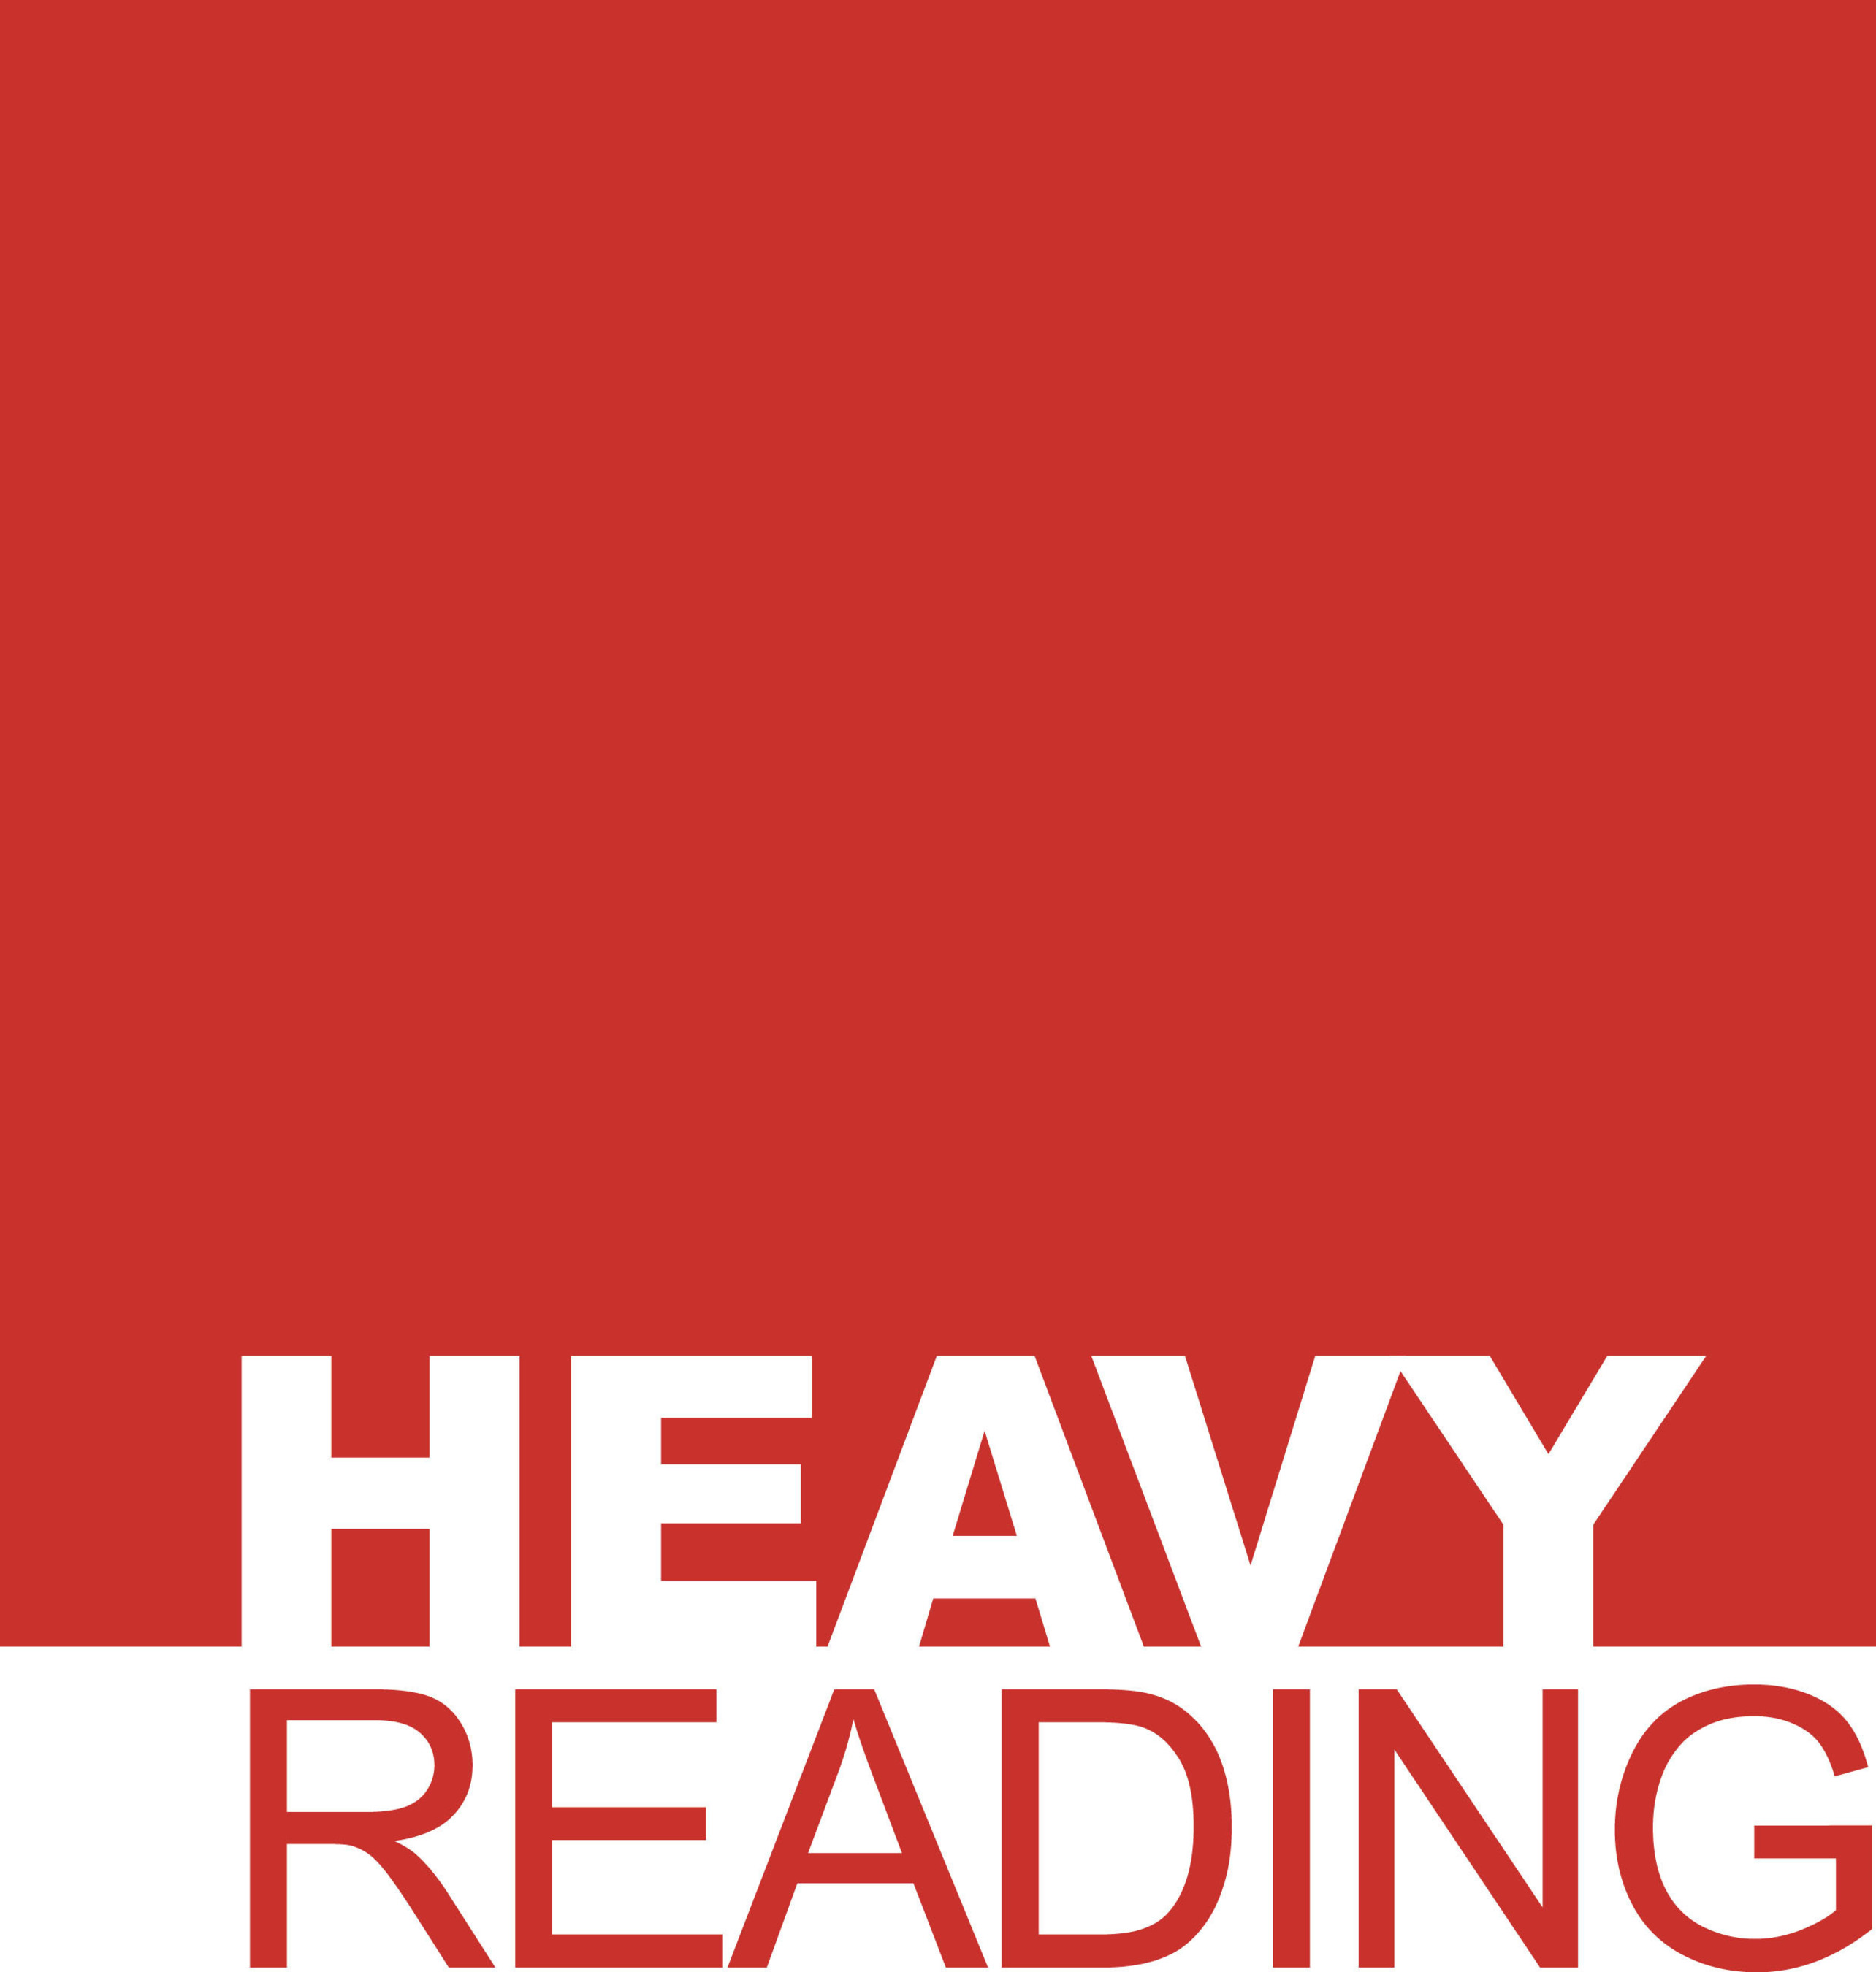 Heavy Reading (PRNewsFoto/Heavy Reading ) (PRNewsFoto/Heavy Reading)